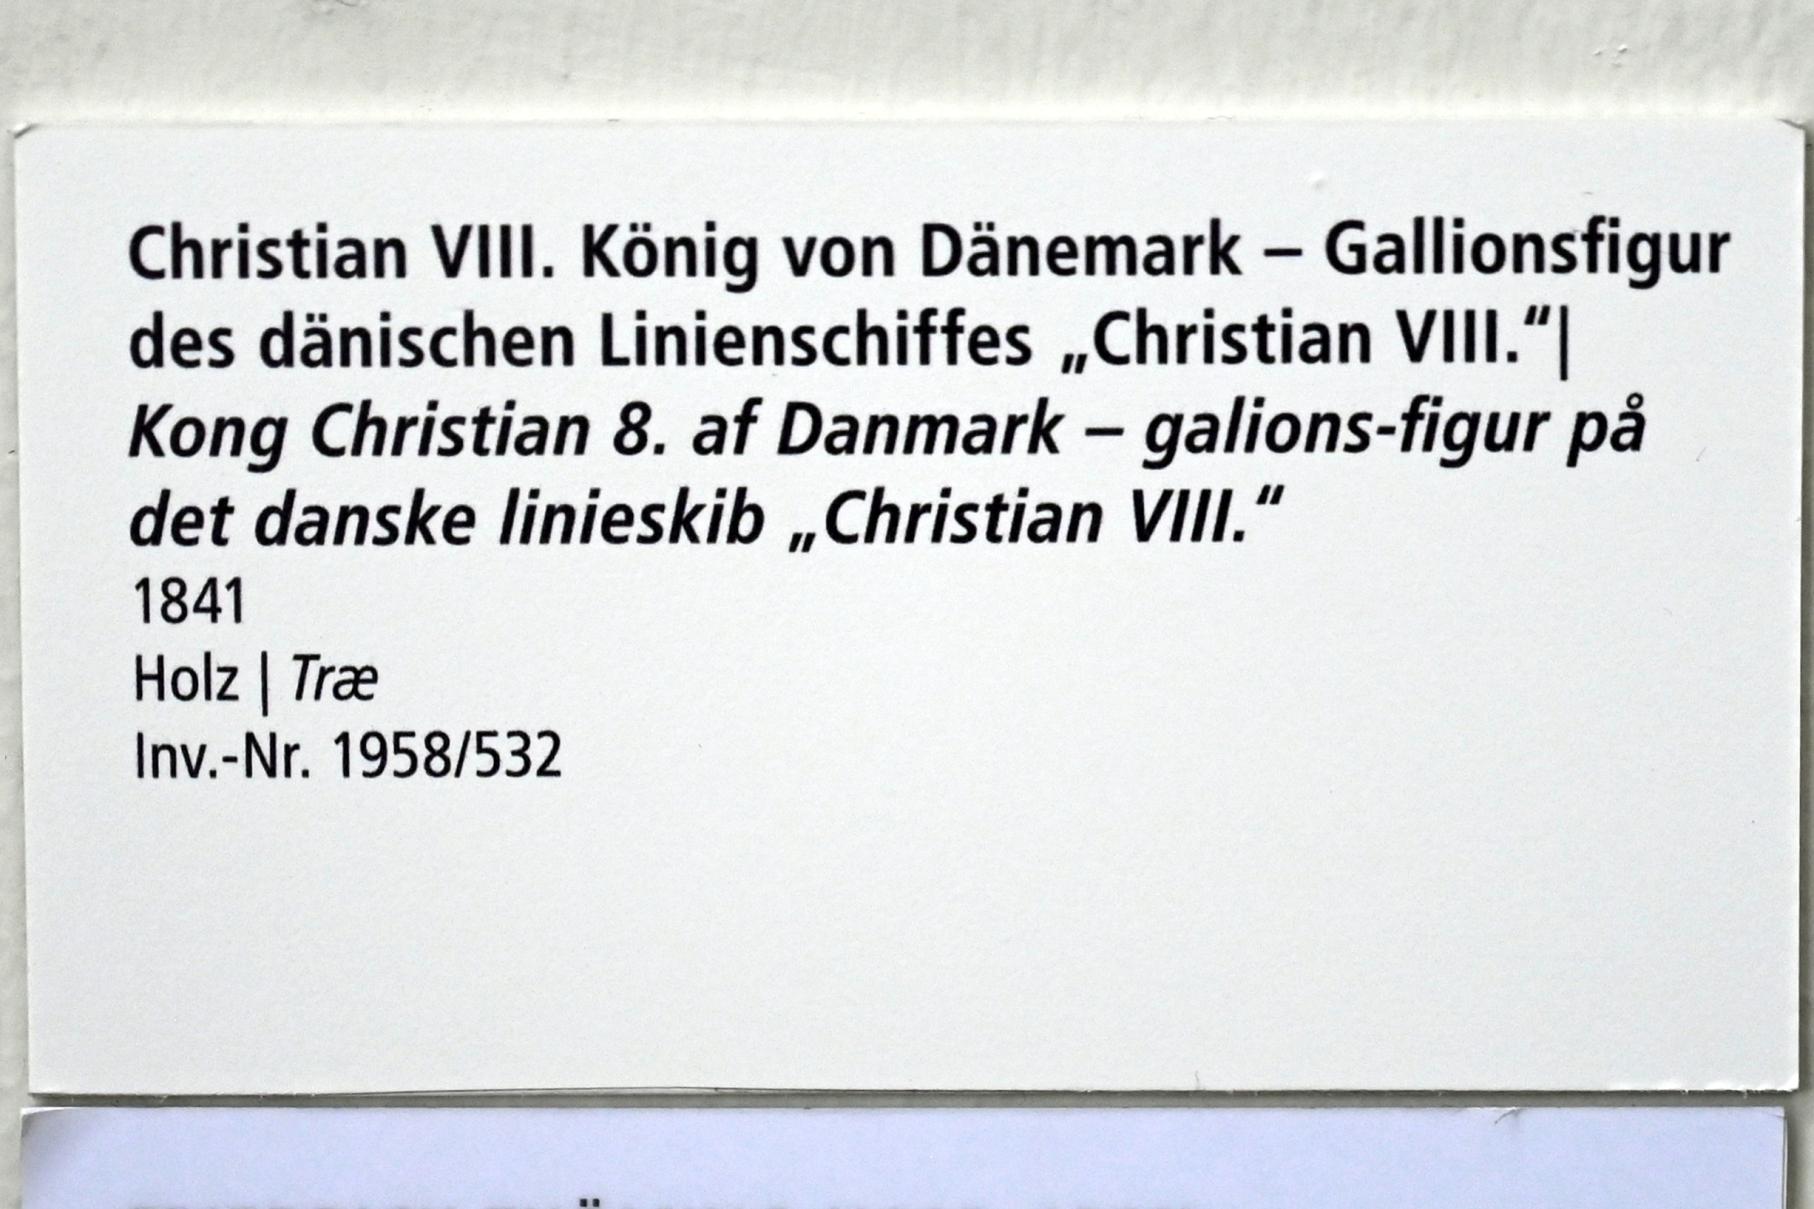 Christian VIII. König von Dänemark - Gallionsfigur des dänischen Linienschiffes "Christian VIII.", Schleswig, Landesmuseum für Kunst und Kulturgeschichte, Saal 44, 1841, Bild 2/2